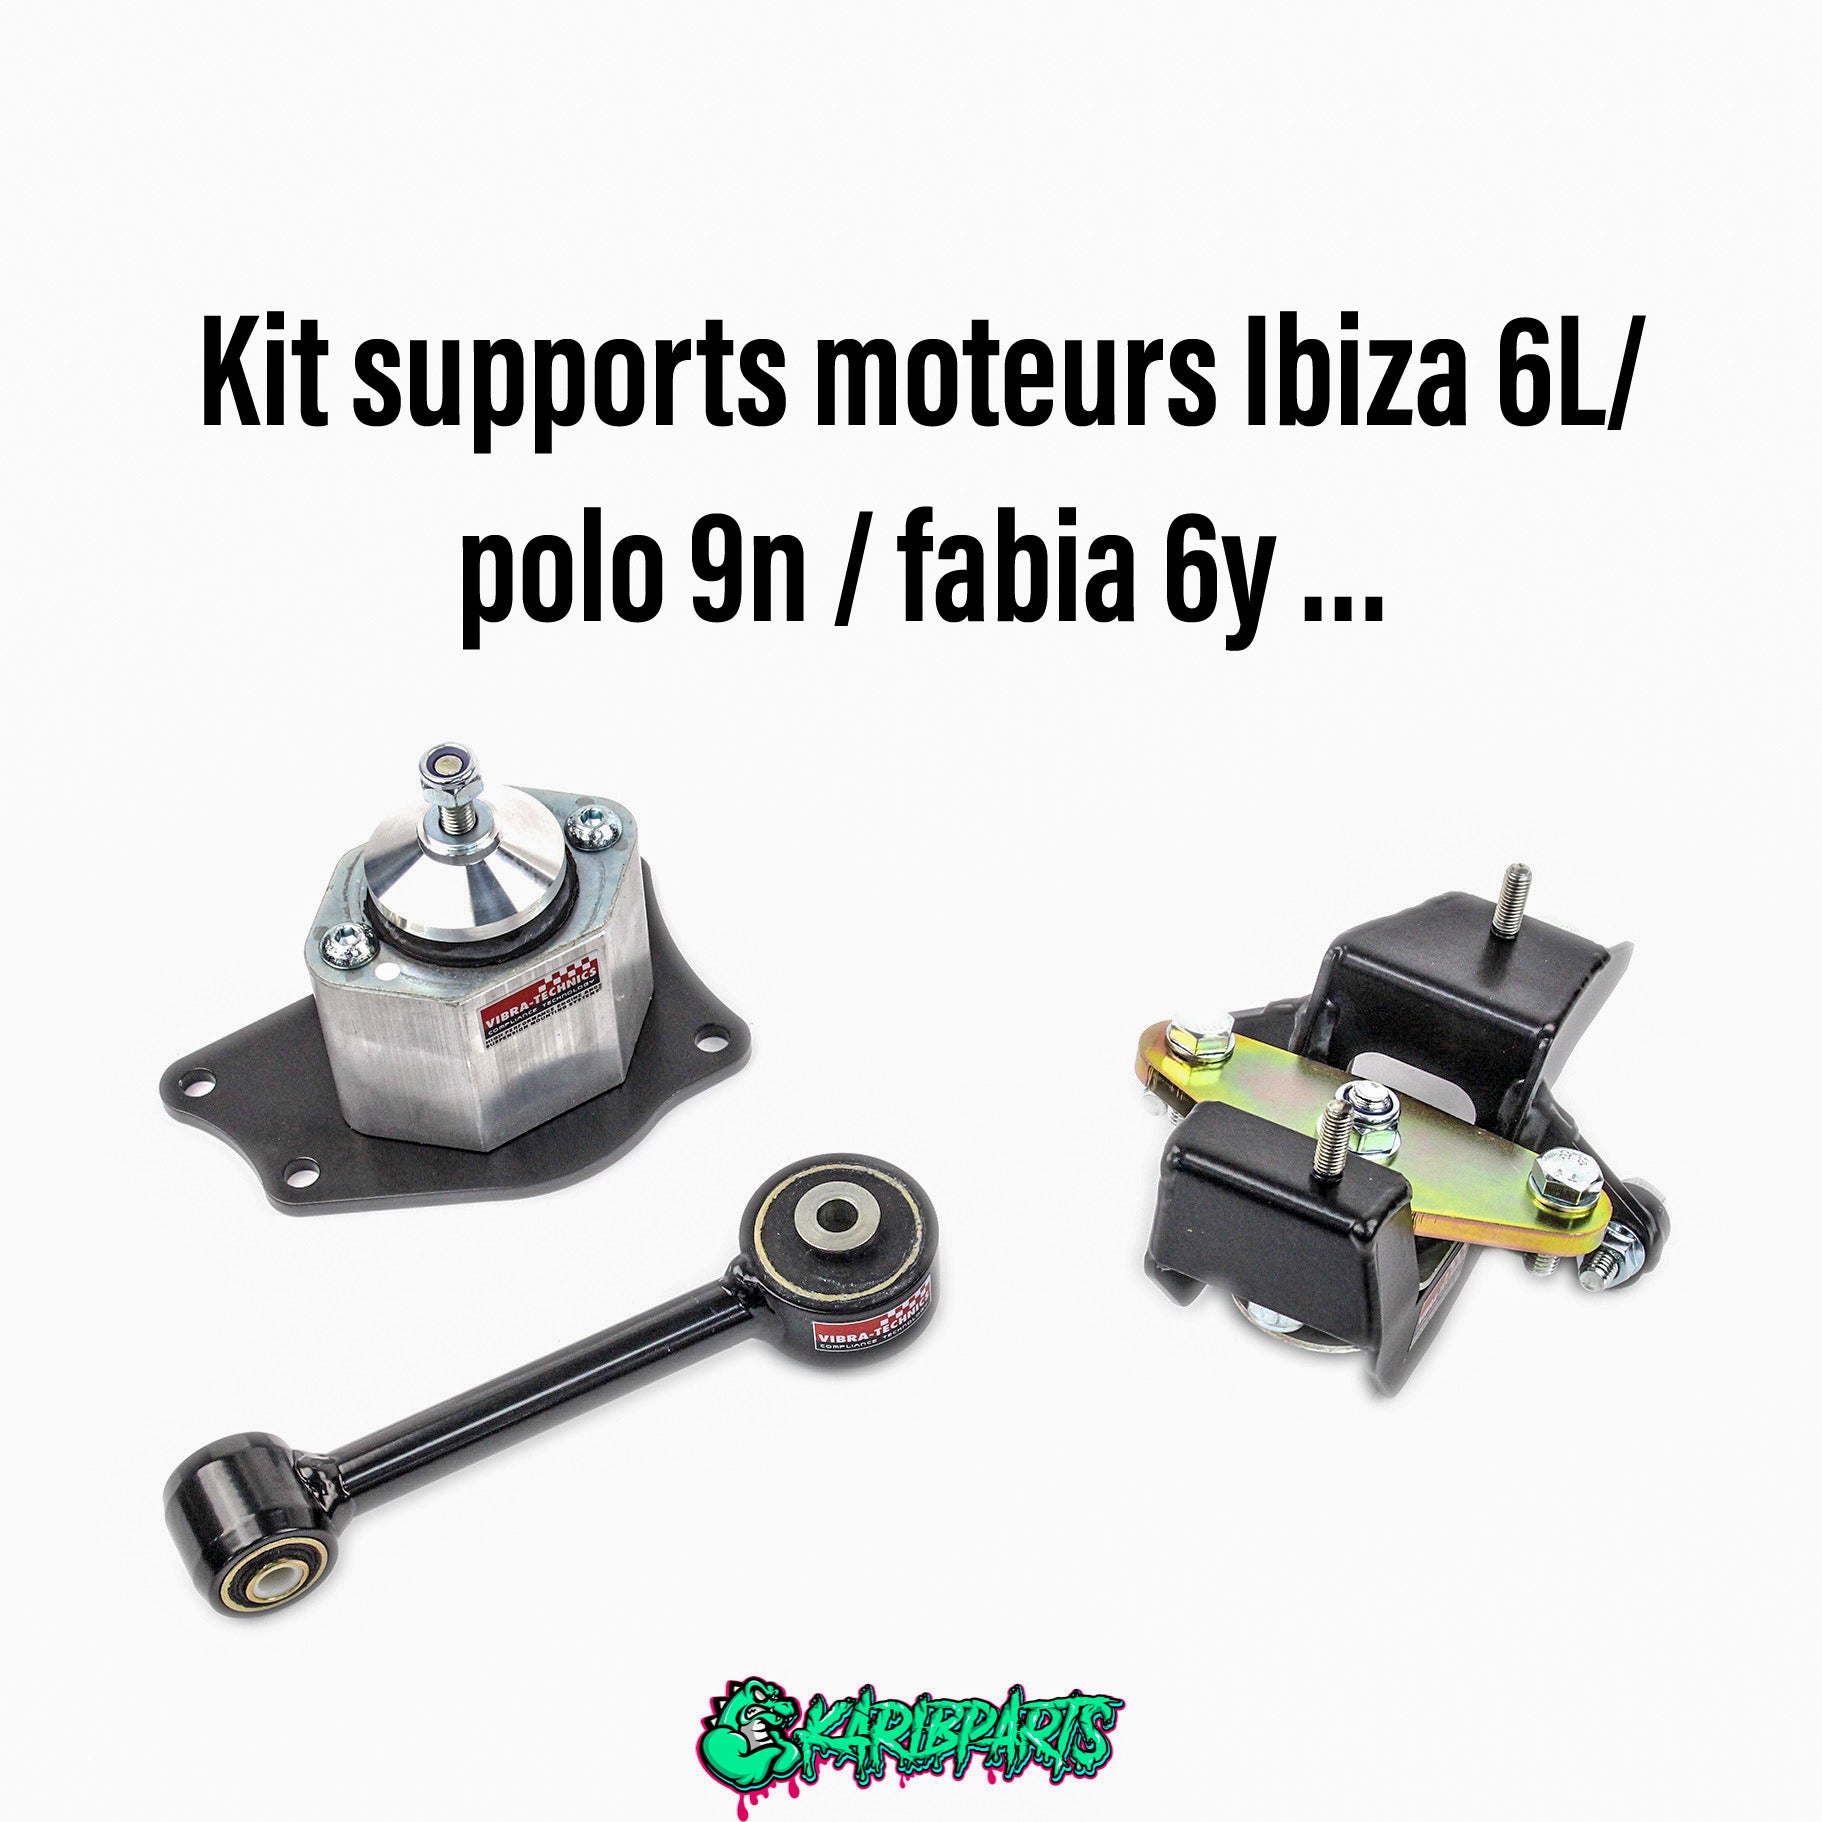 Kit Supports Moteur et Boite Vibra-Technics pour Seat Ibiza / VW Polo / Skoda Fabia